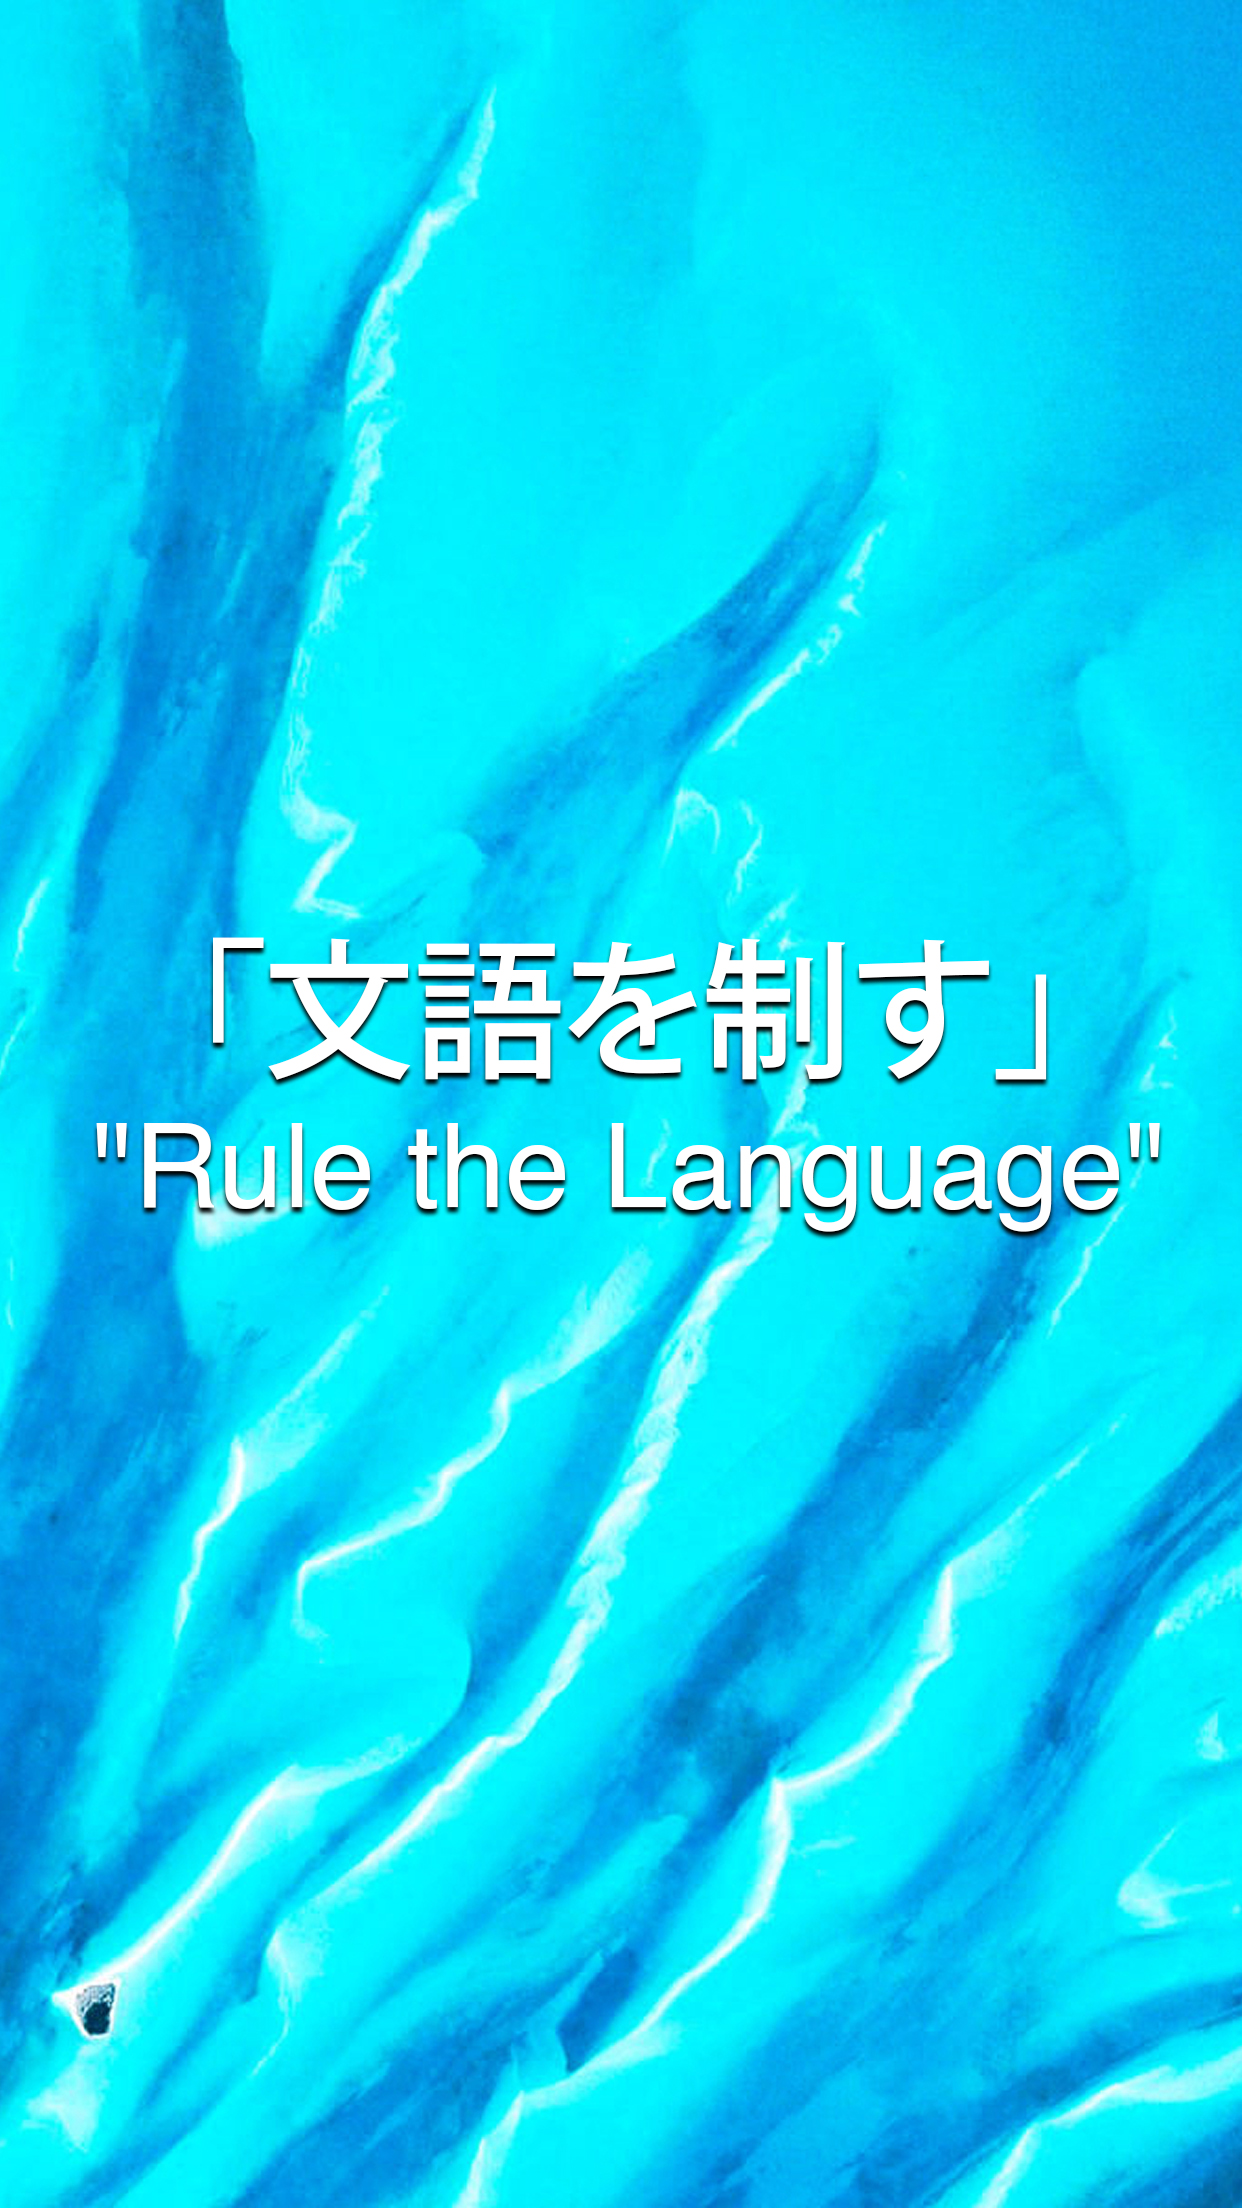 General 1242x2208 Japan kanji blue quote portrait display digital art text